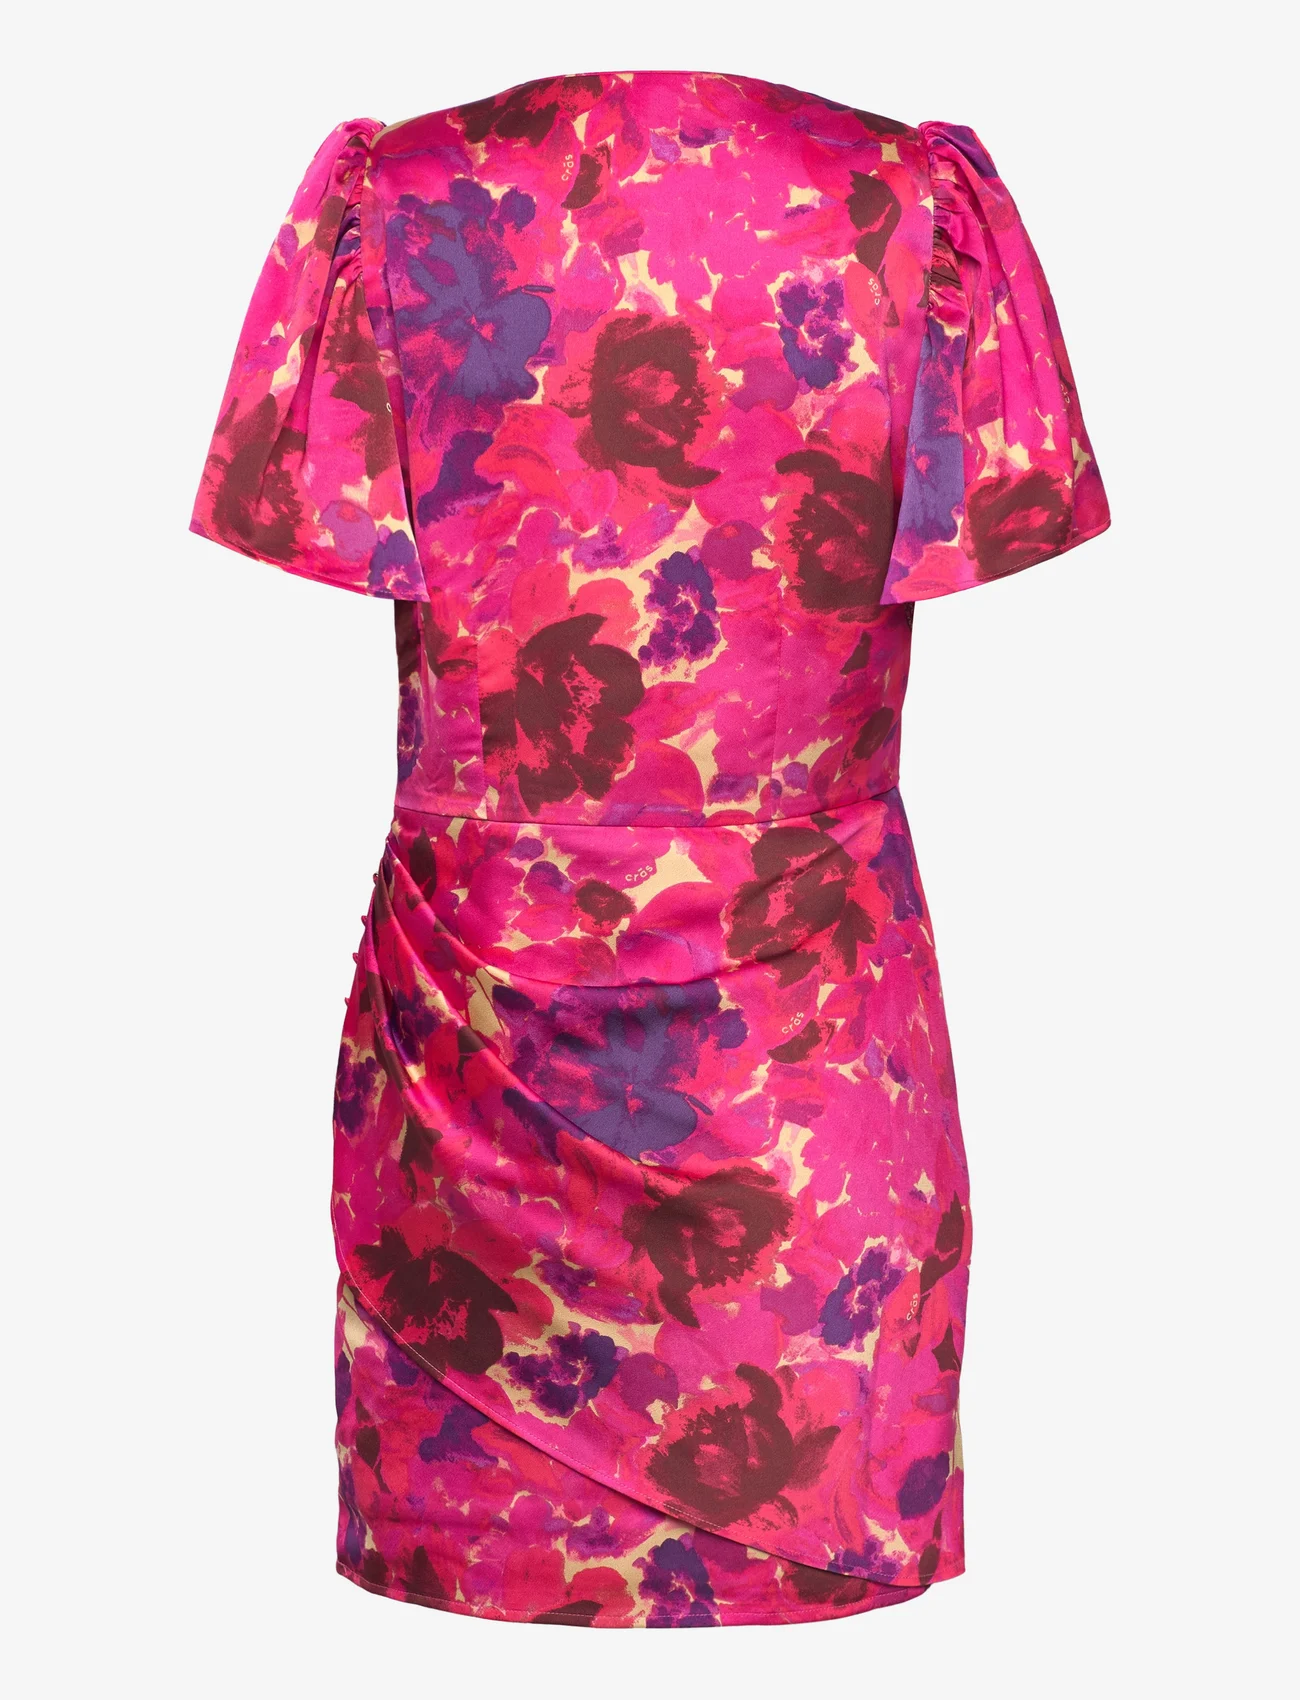 Cras - Prismcras Dress - festtøj til outletpriser - pink garden - 1